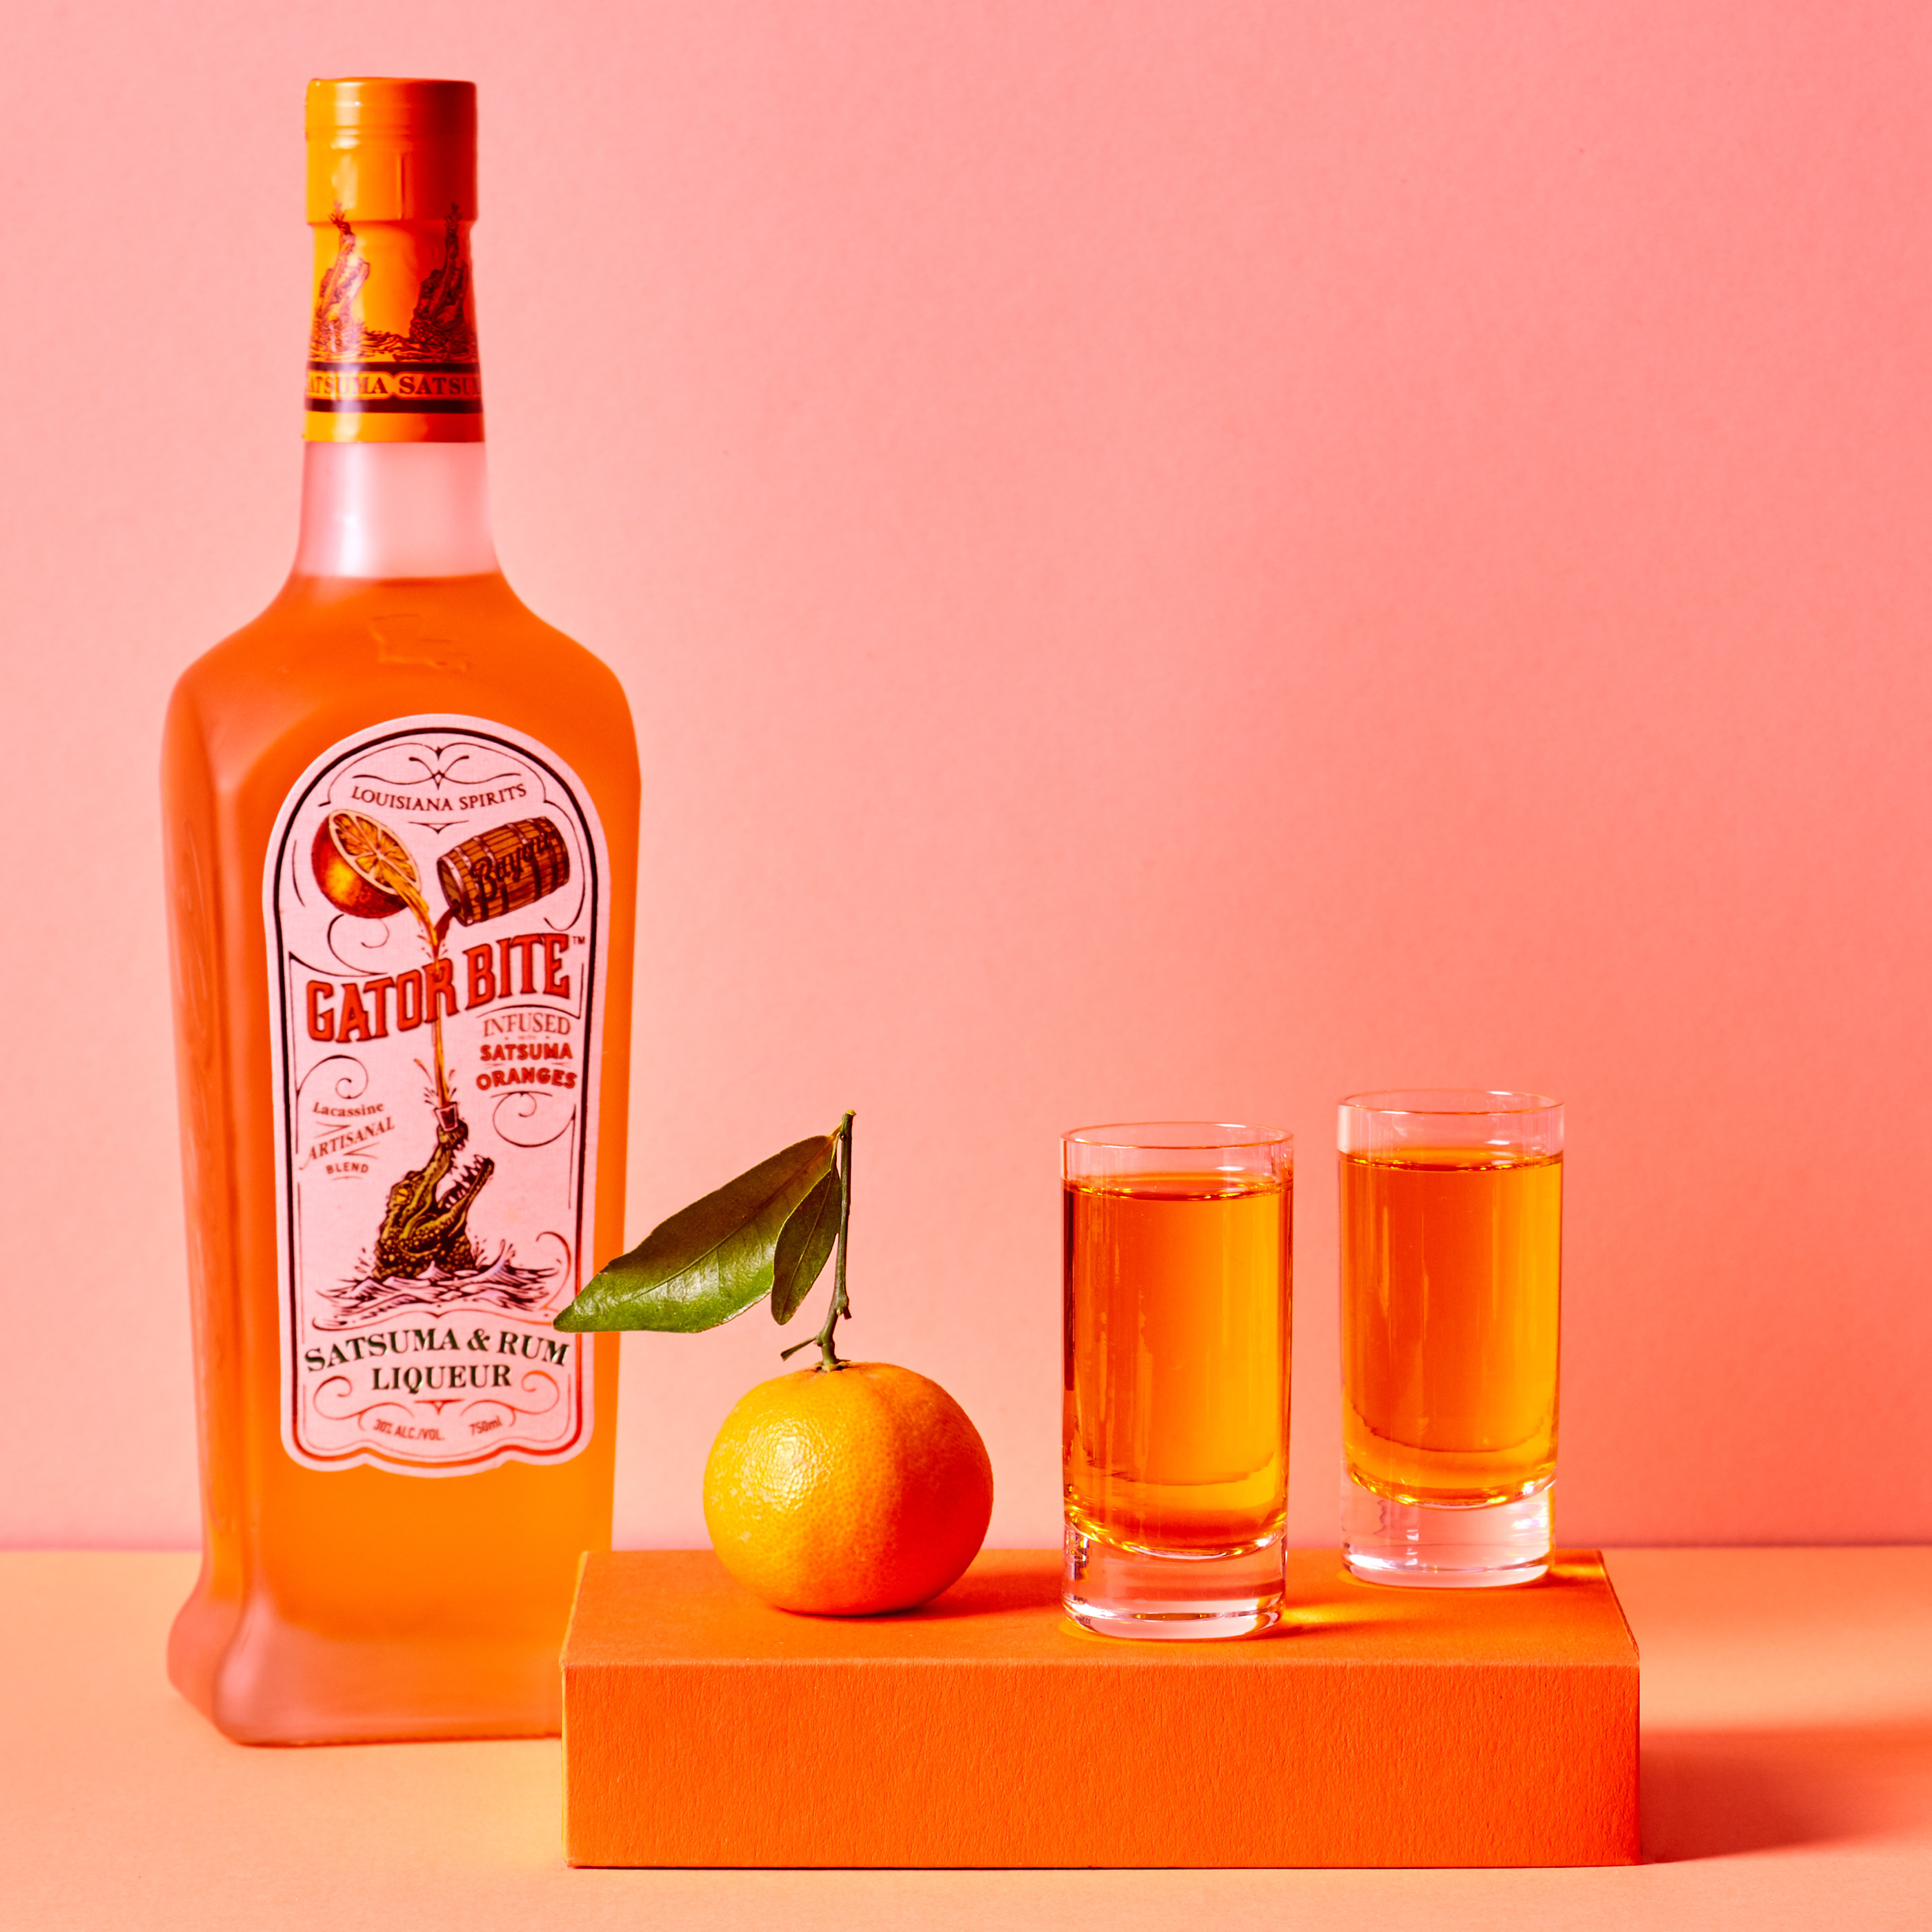 Лікер Gator Bite Satsuma and Rum Liqueur 0,7л 30% в Україні